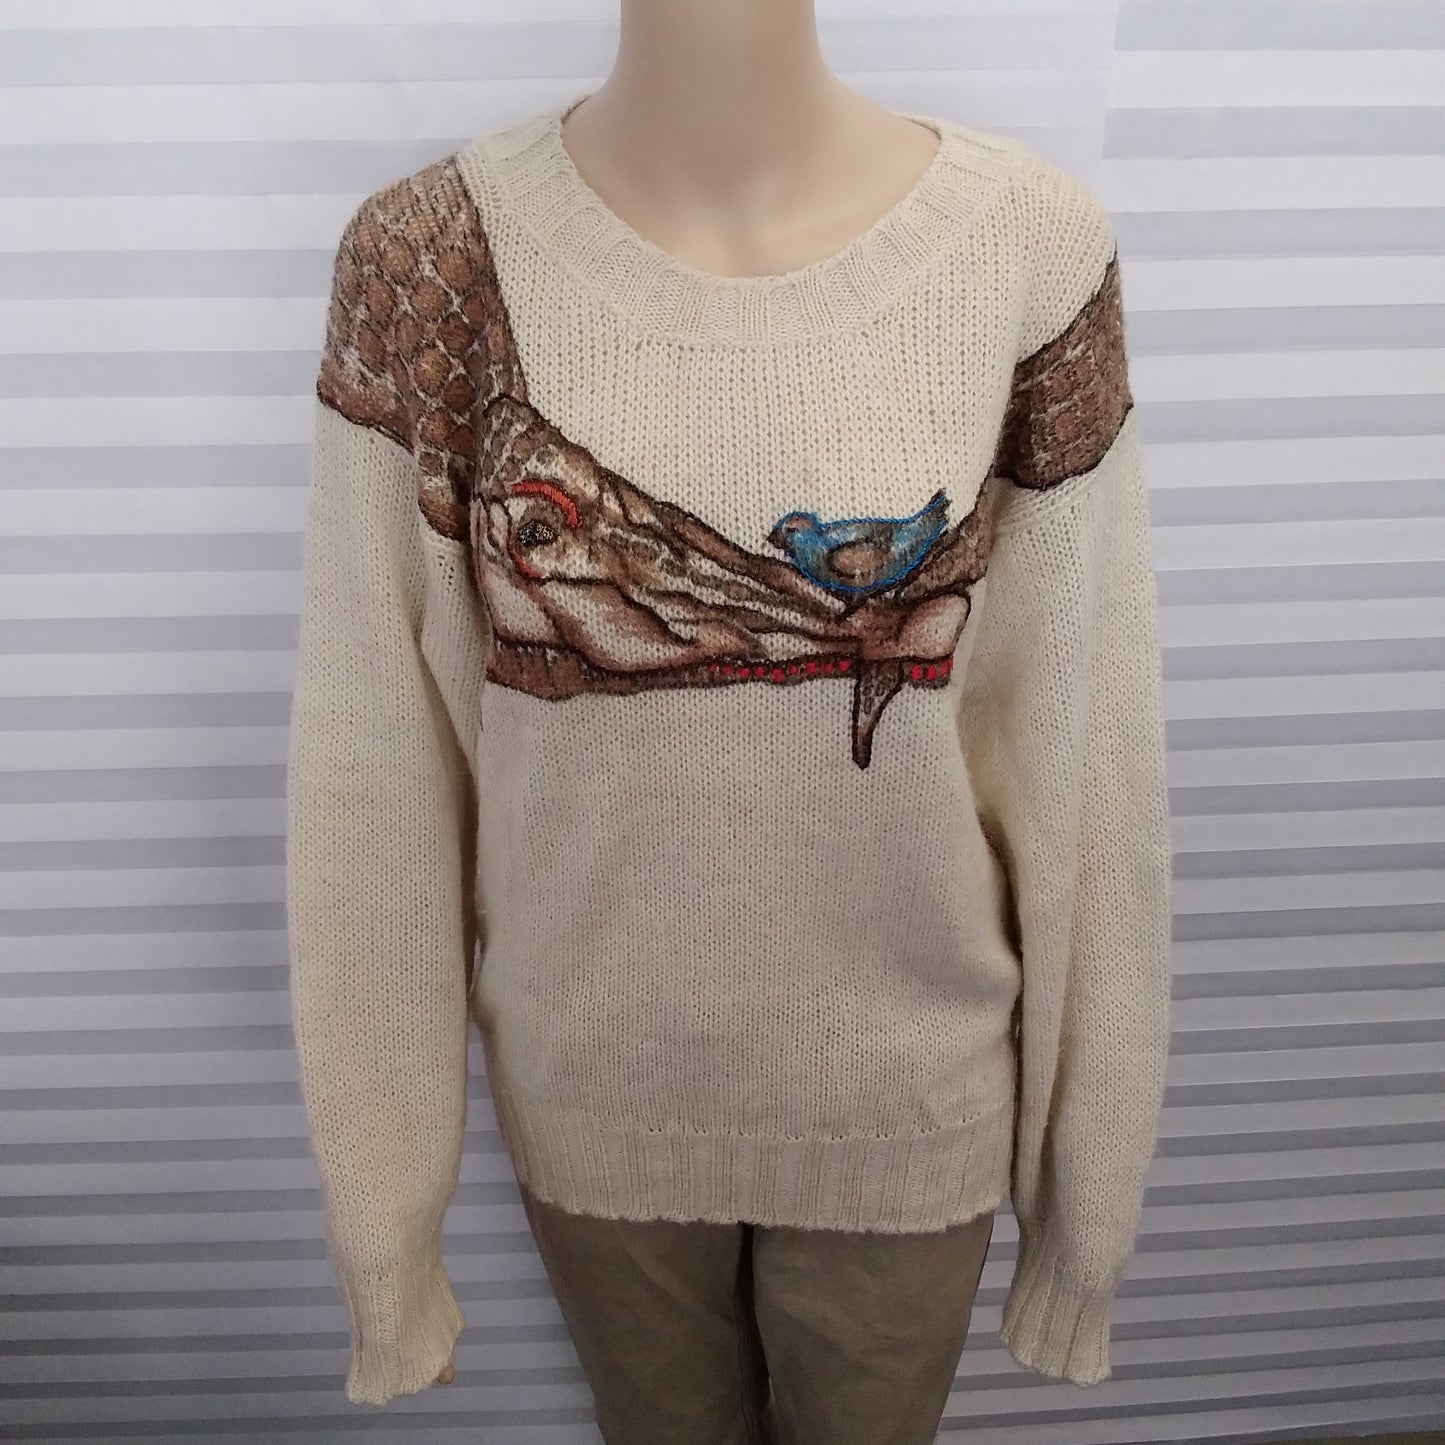 Rare 80's Krizia Maglia Alligator Sweater - Size 46 (US12)